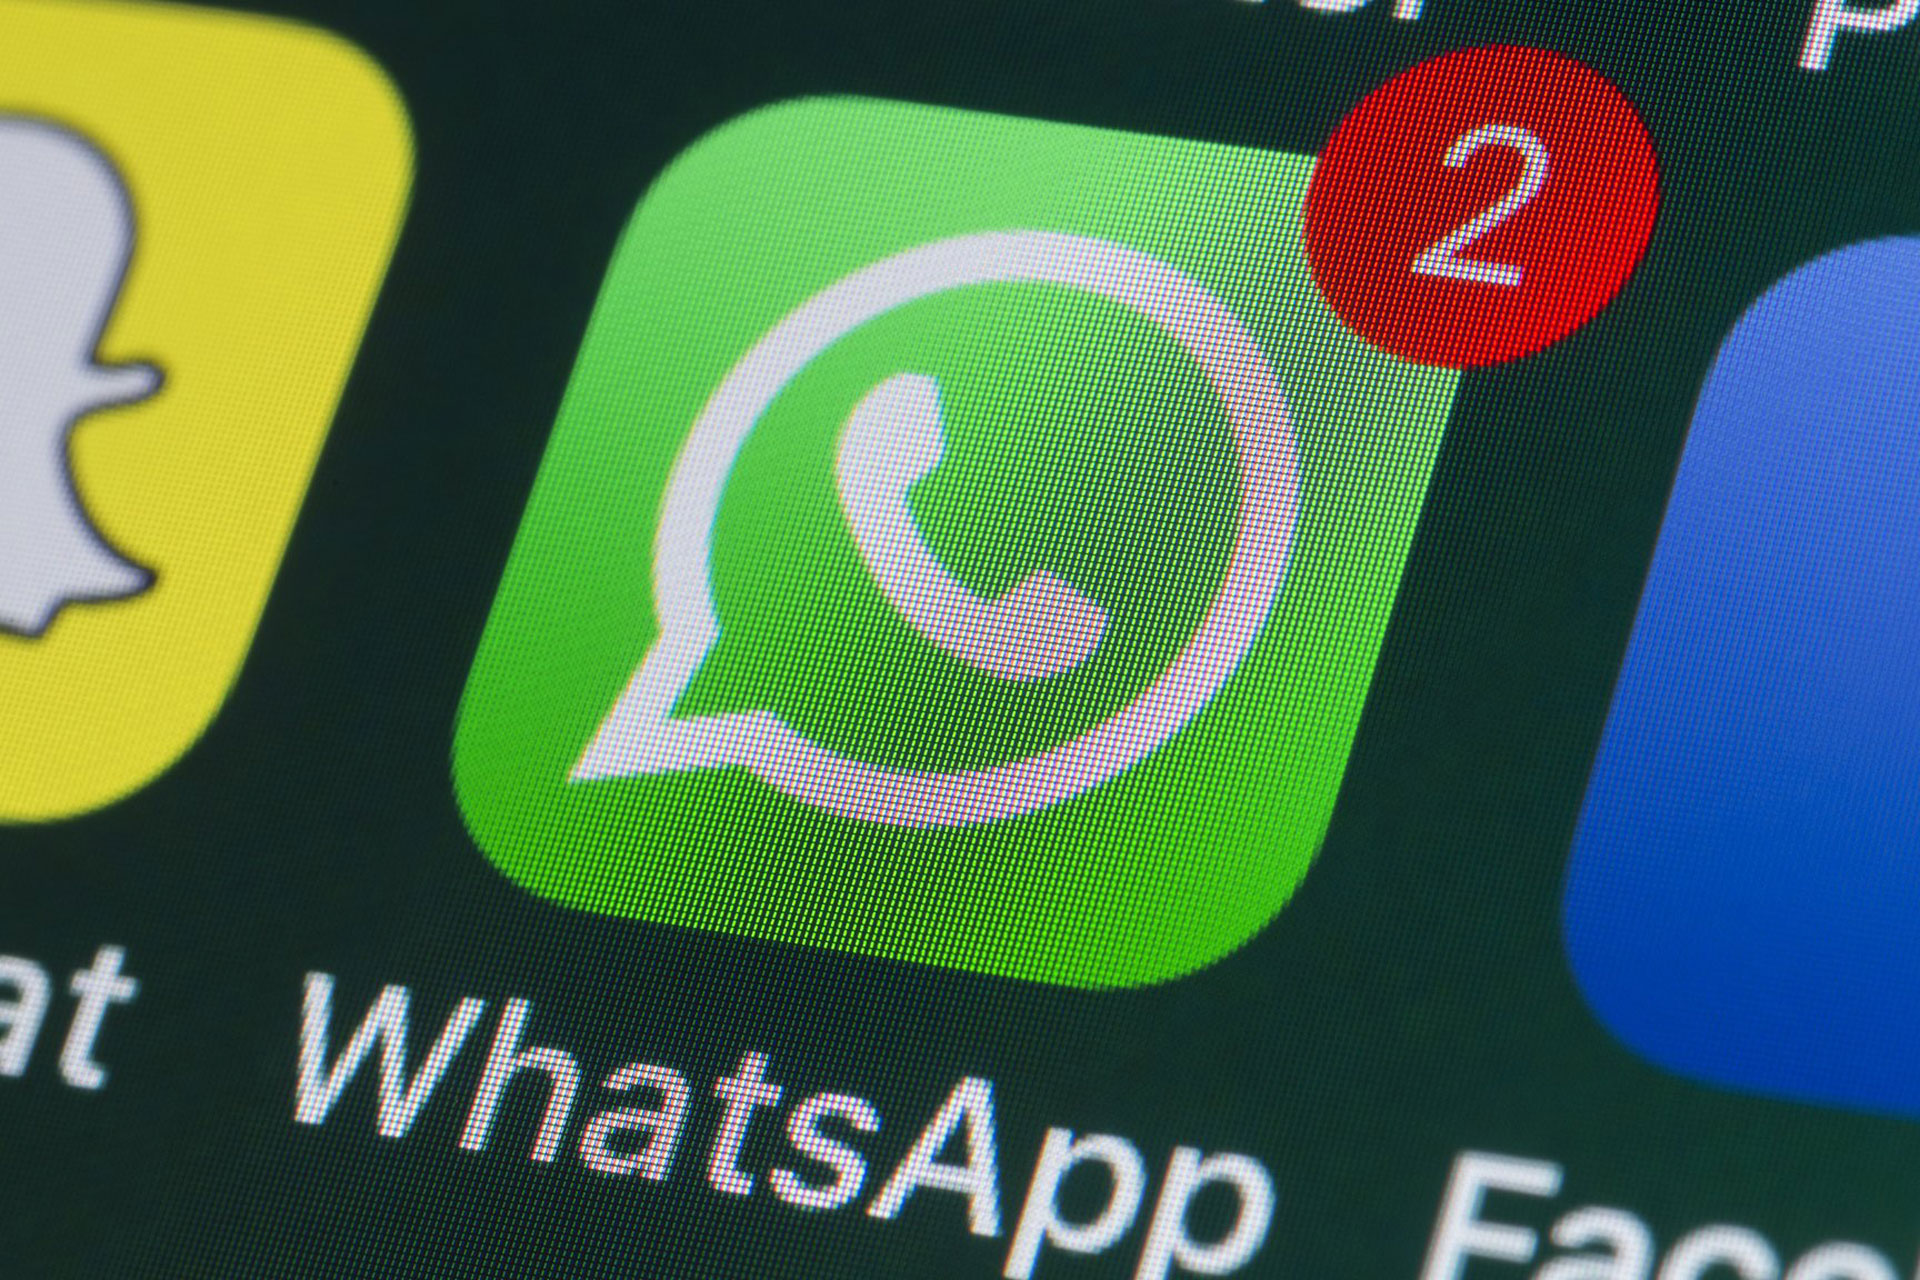 در صورت نپذیرفتن سیاست حریم خصوصی جدید واتساپ، دسترسی کاربران محدود خواهد شد